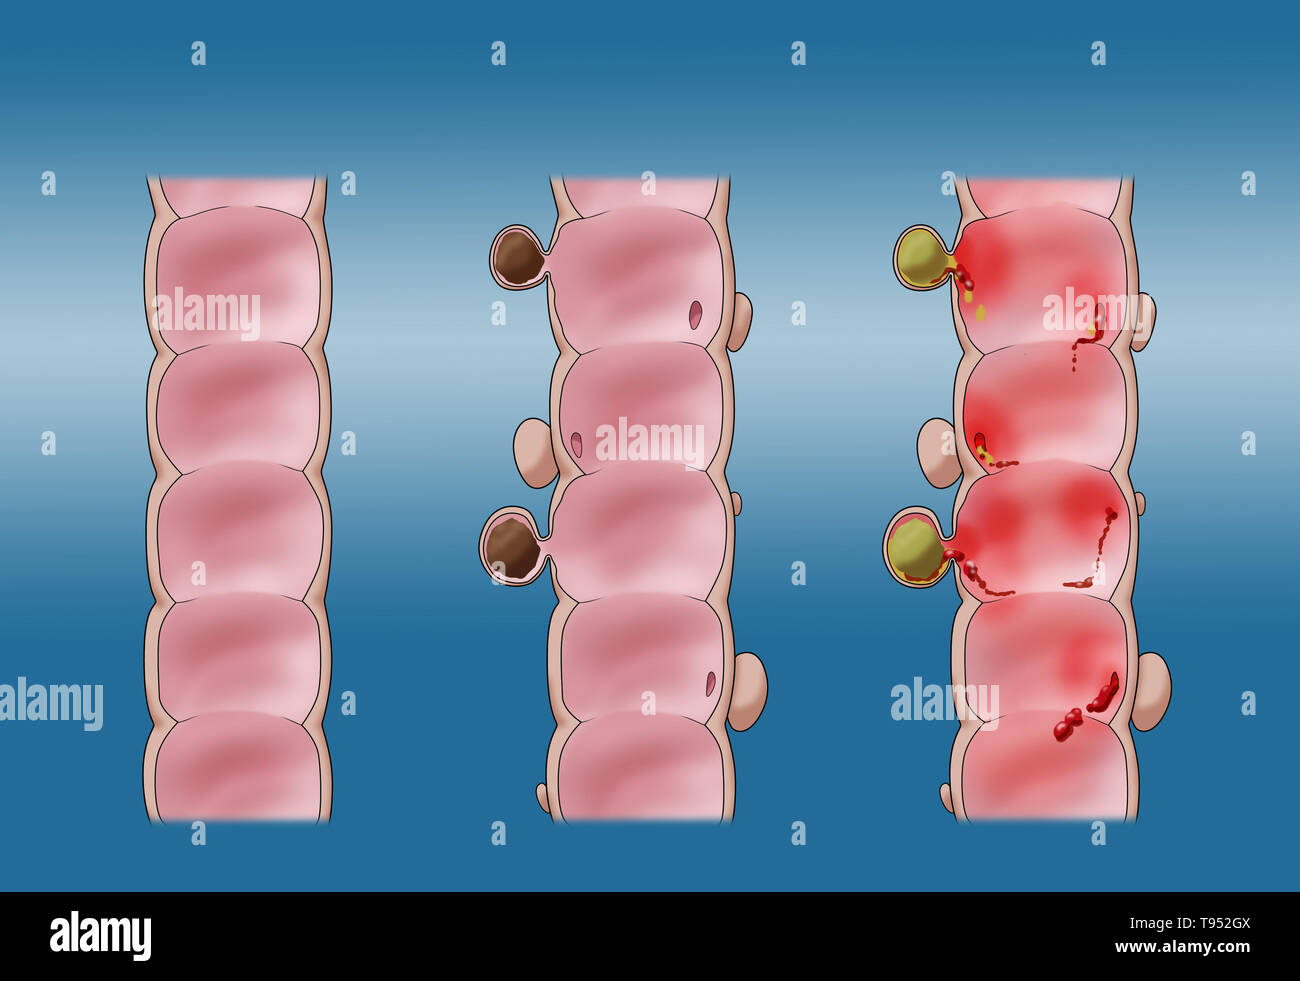 Illustrazione confrontando la diverticolosi (centrale) e diverticolite (a destra). Un sano colon è mostrato sulla sinistra. Foto Stock